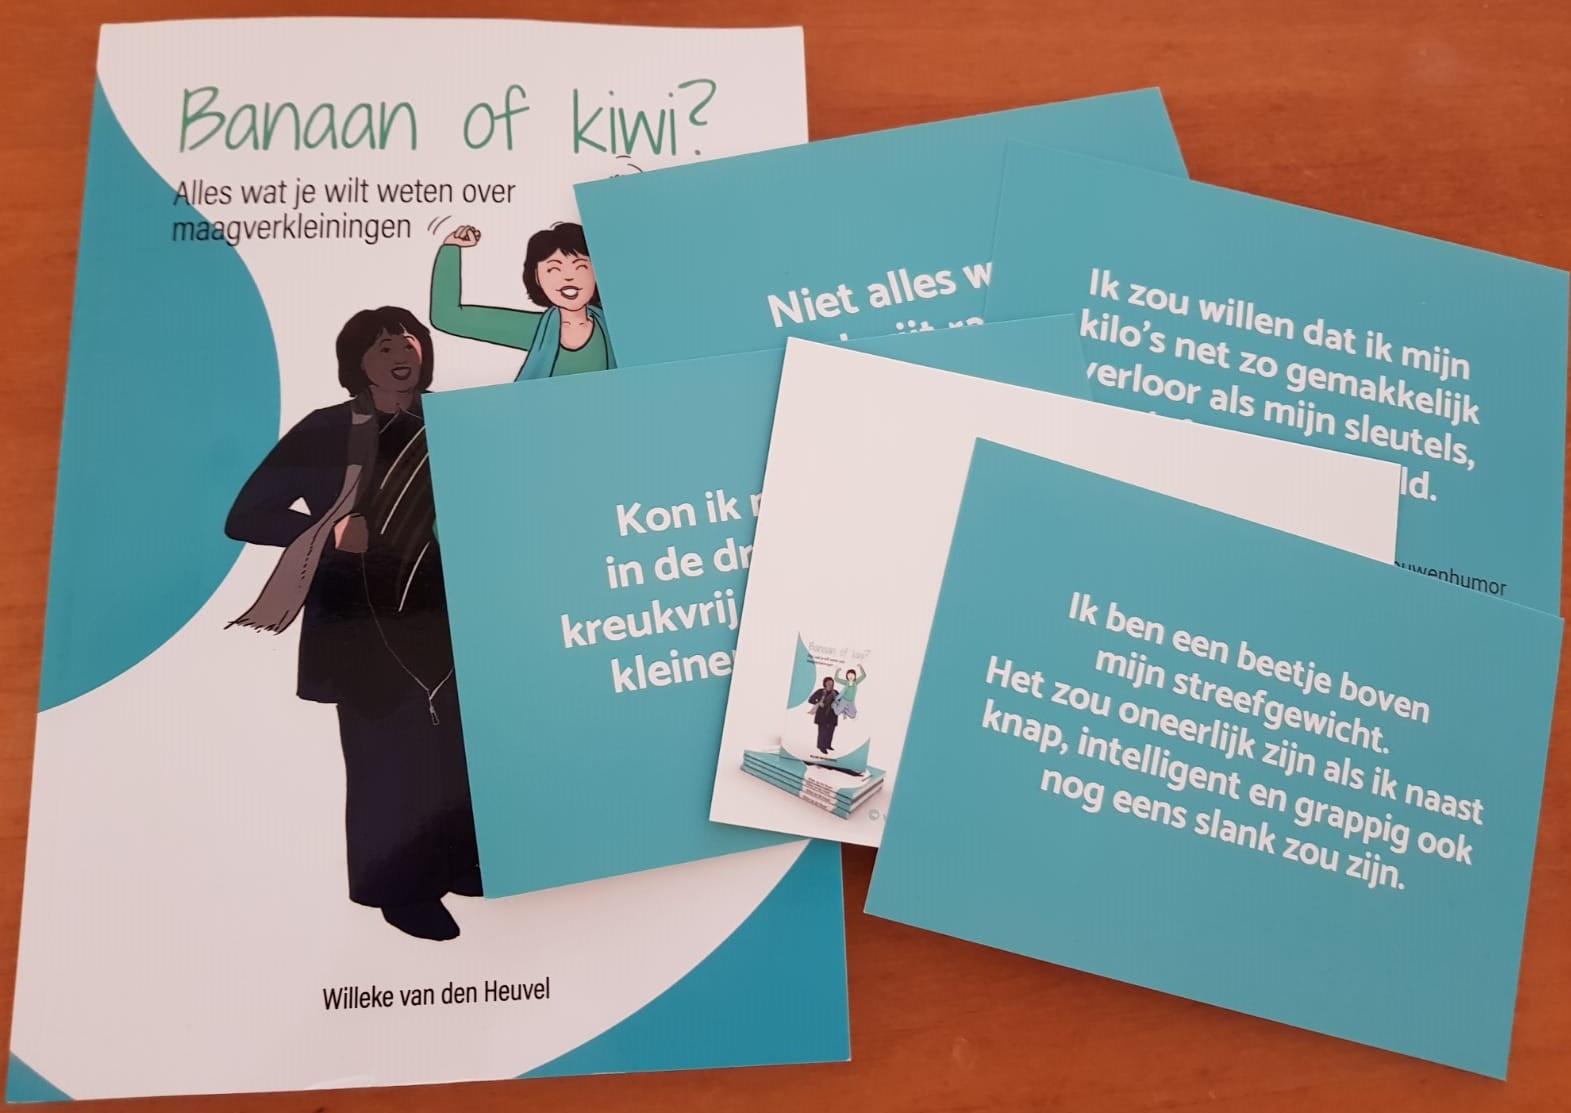 Banaan of kiwi Willeke van den Heuvel